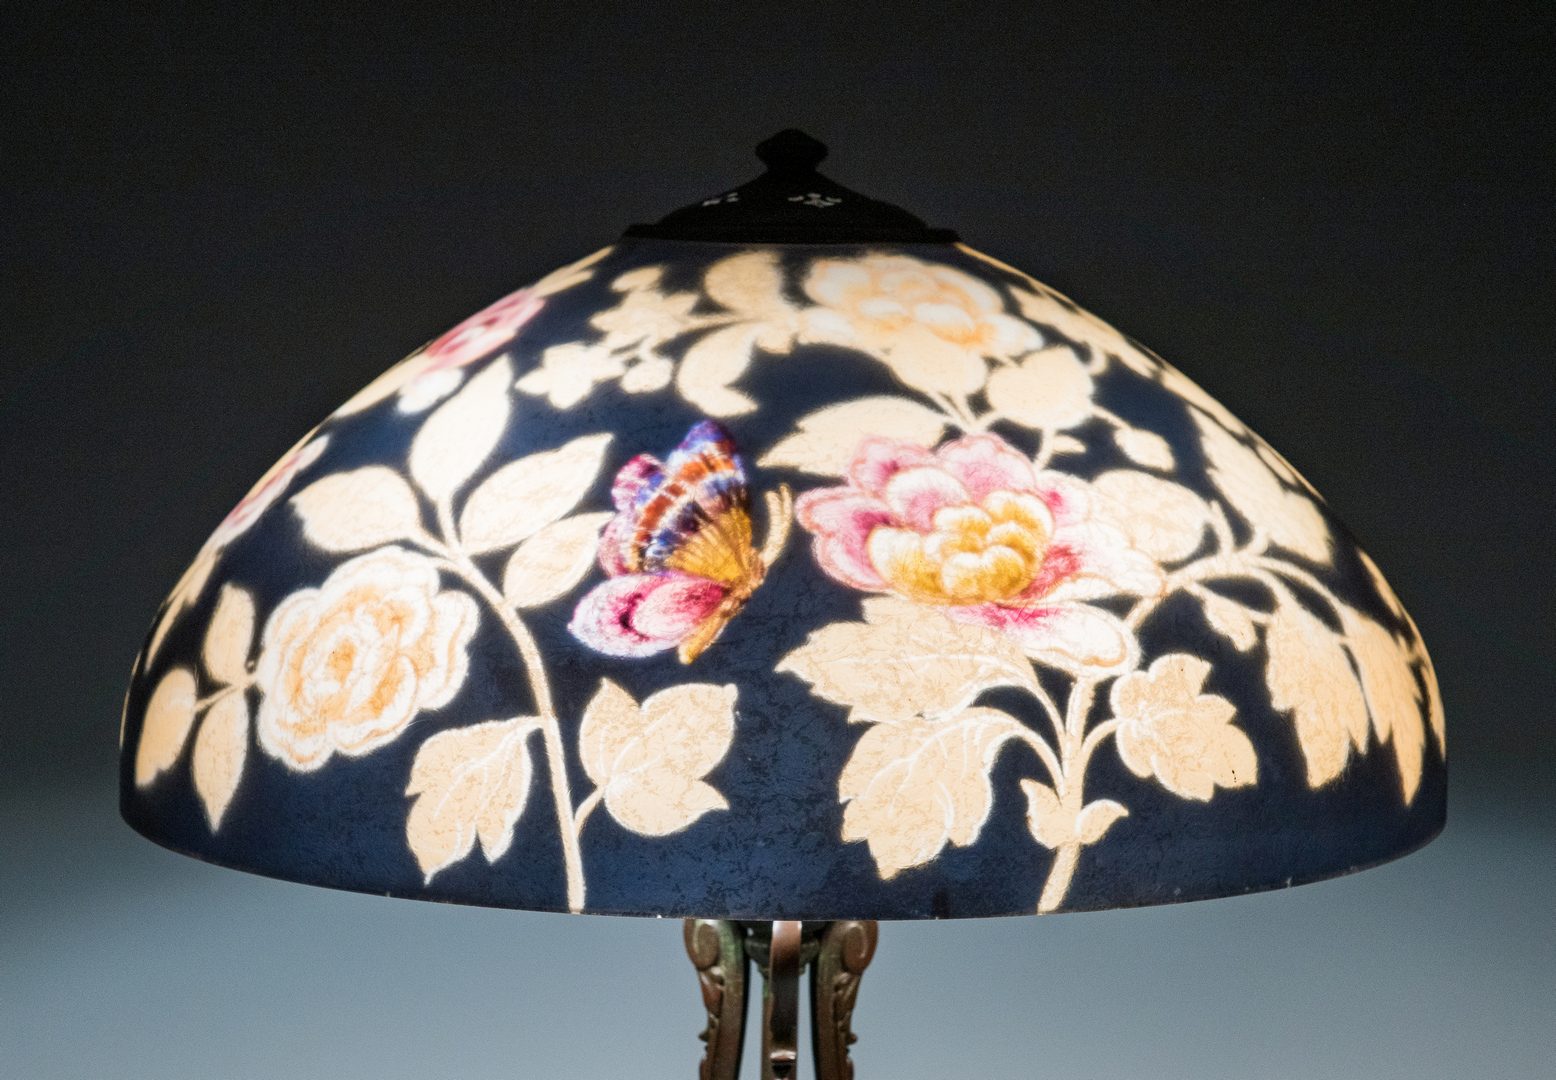 Lot 511: Handel Reverse Painted Table Lamp, Parrots